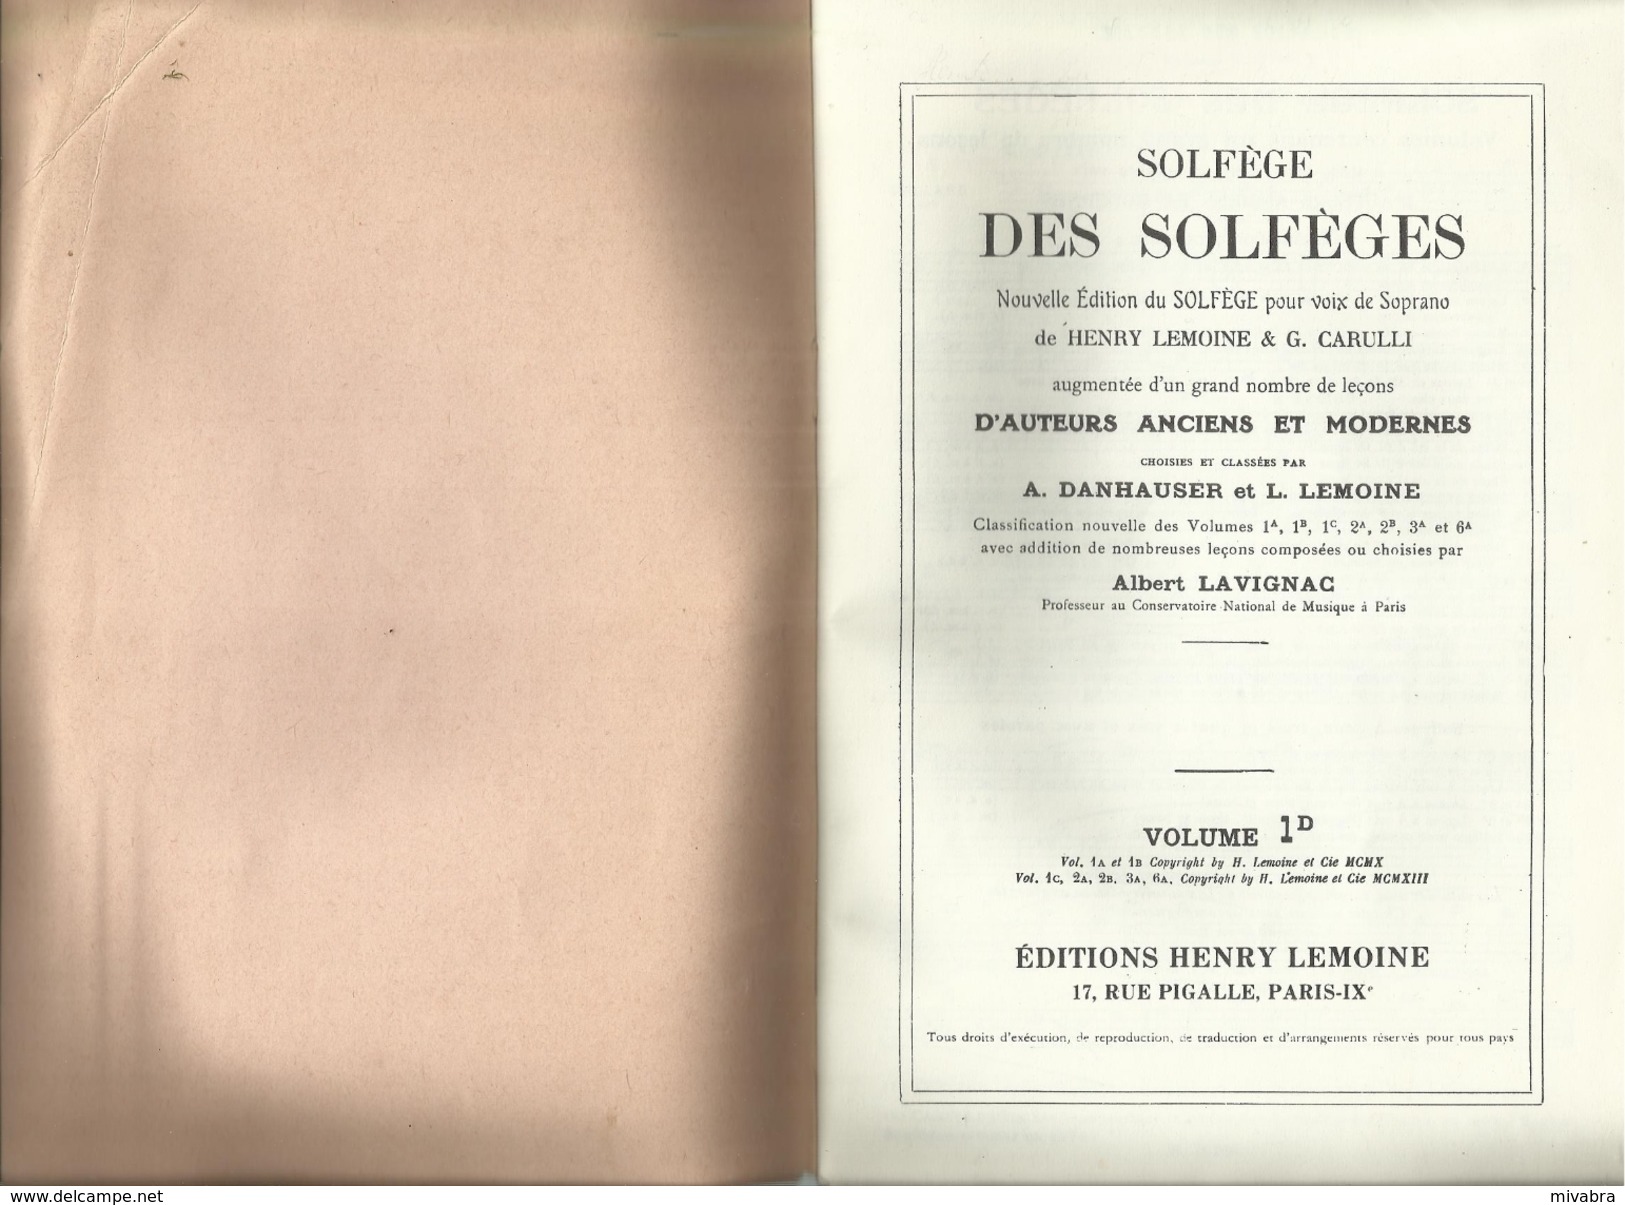 Solfege Des Solfeges: Nouvelle Edition Du Solfege Pour Voix De Soprano Grand Nombre De Leçons Volume 1D - Folk Music